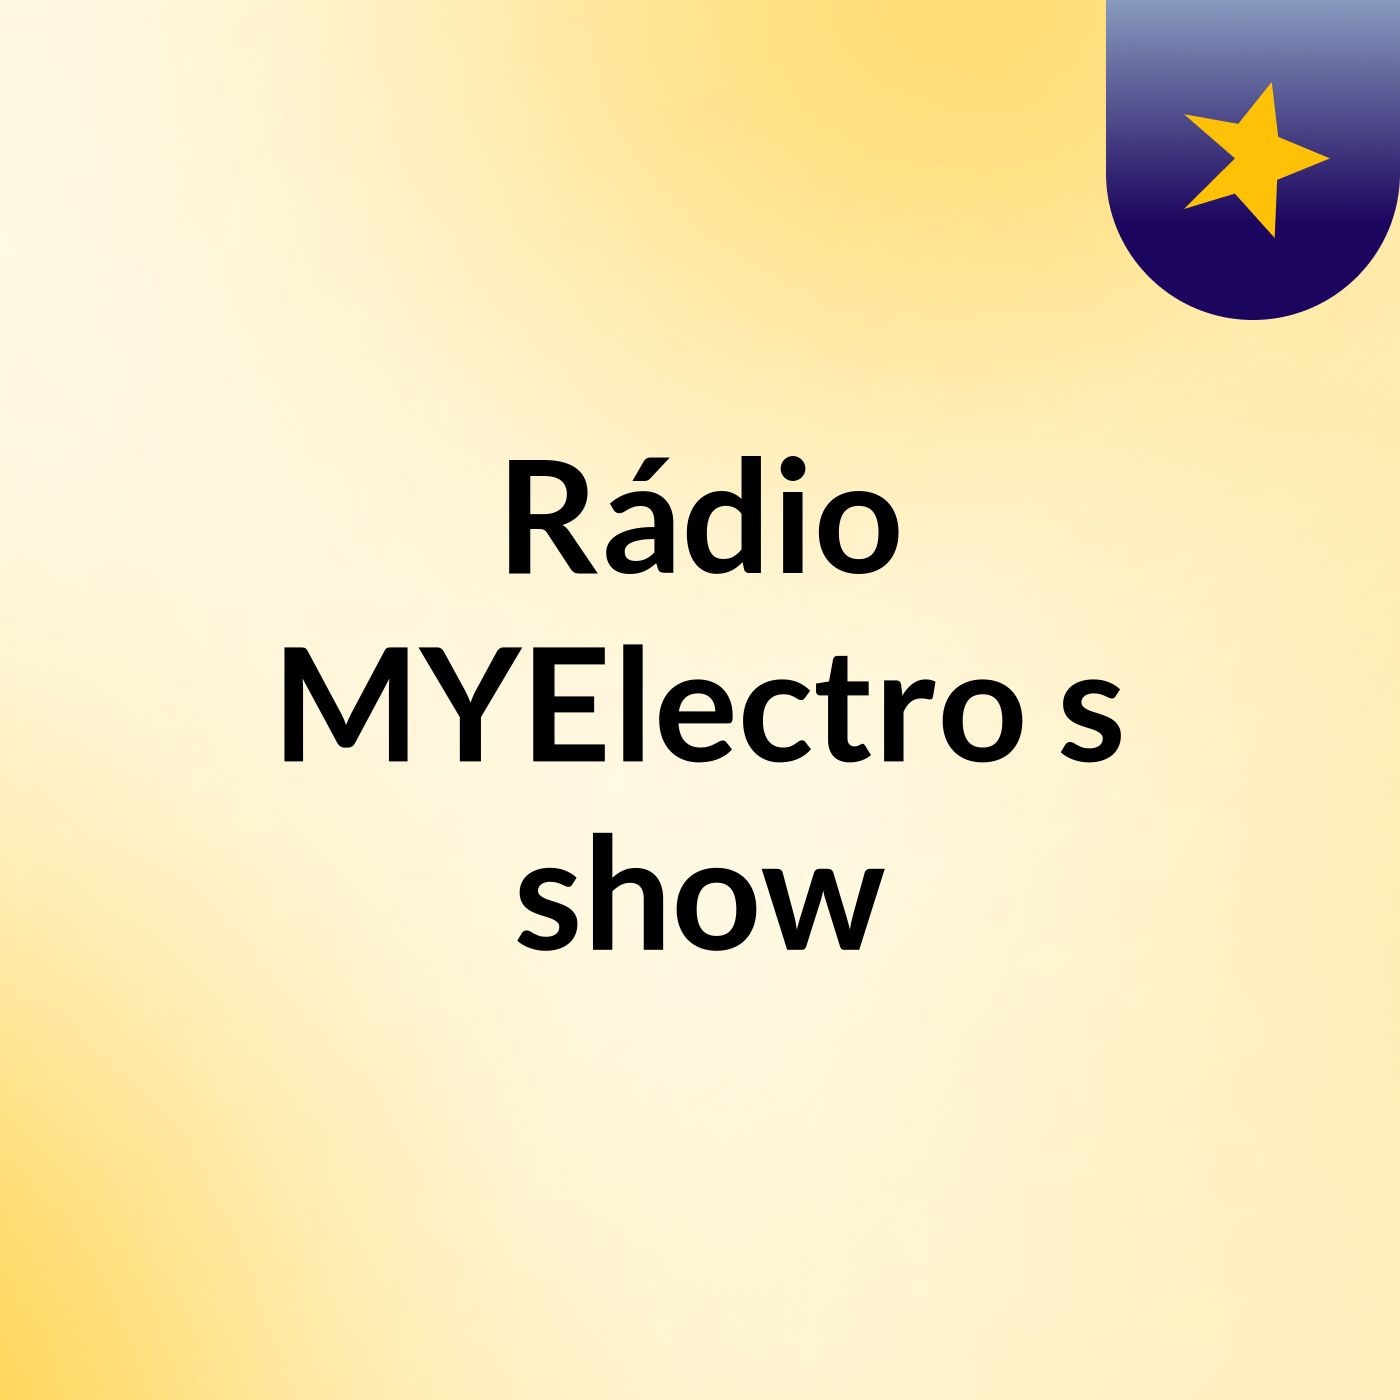 Rádio MYElectro's show